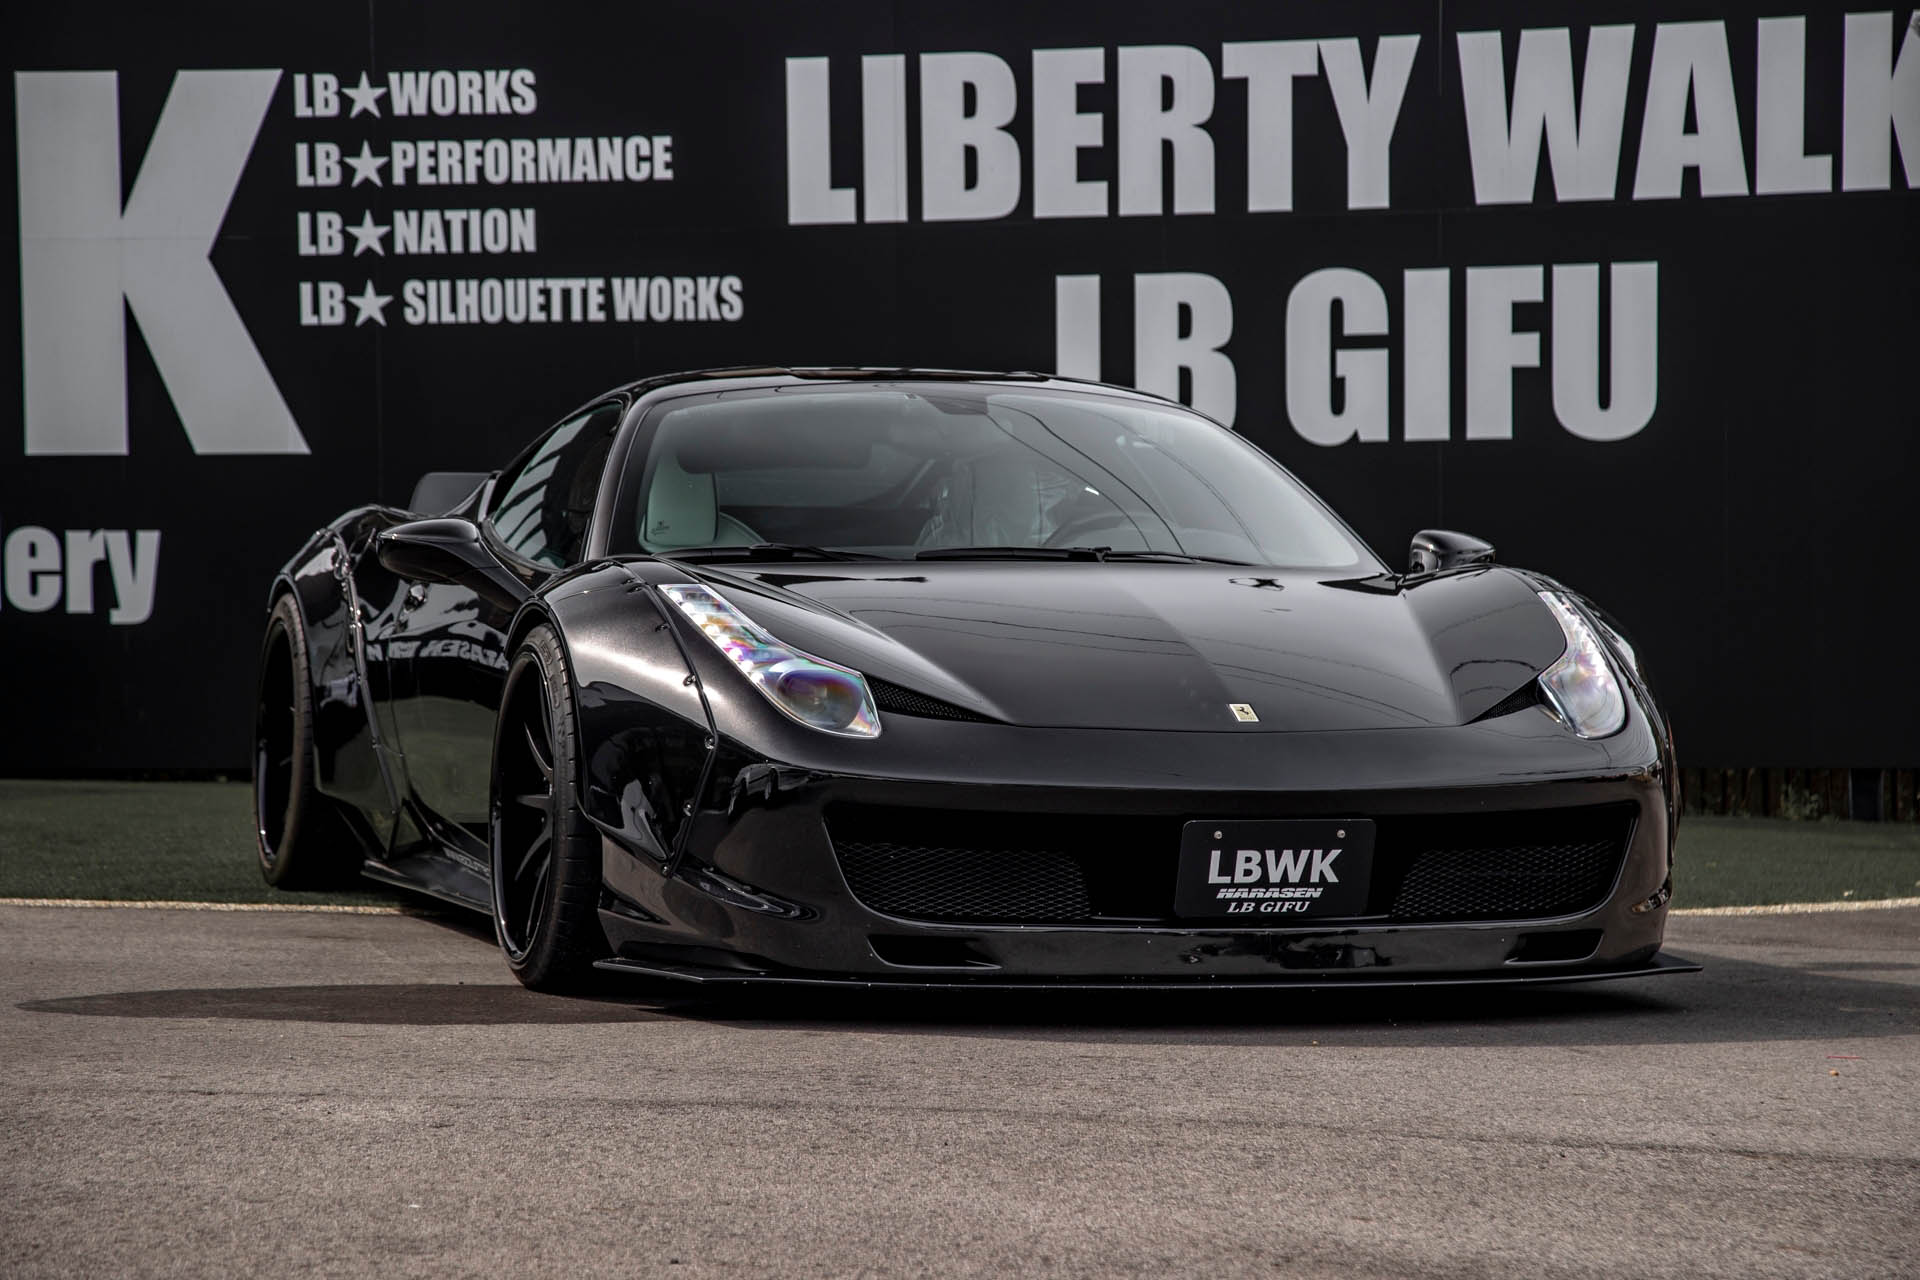 LB-WORKS Ferrari 458 - Liberty Walk | リバティーウォーク Complete